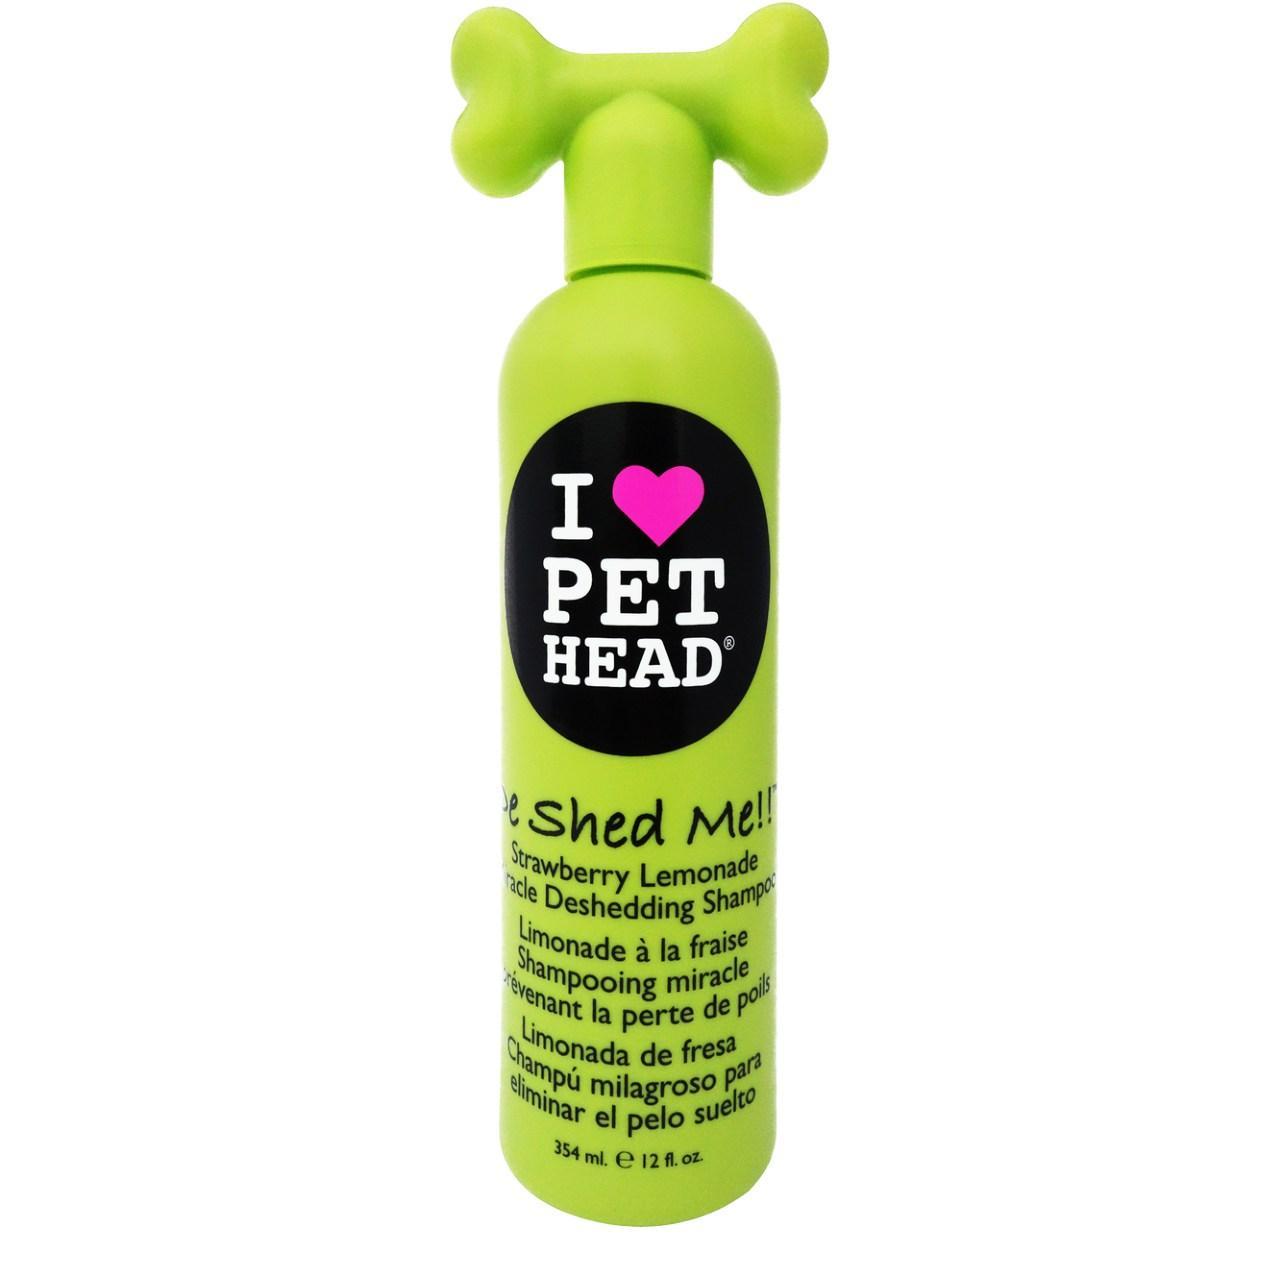 An image of Pet Head De Shed Shampoo